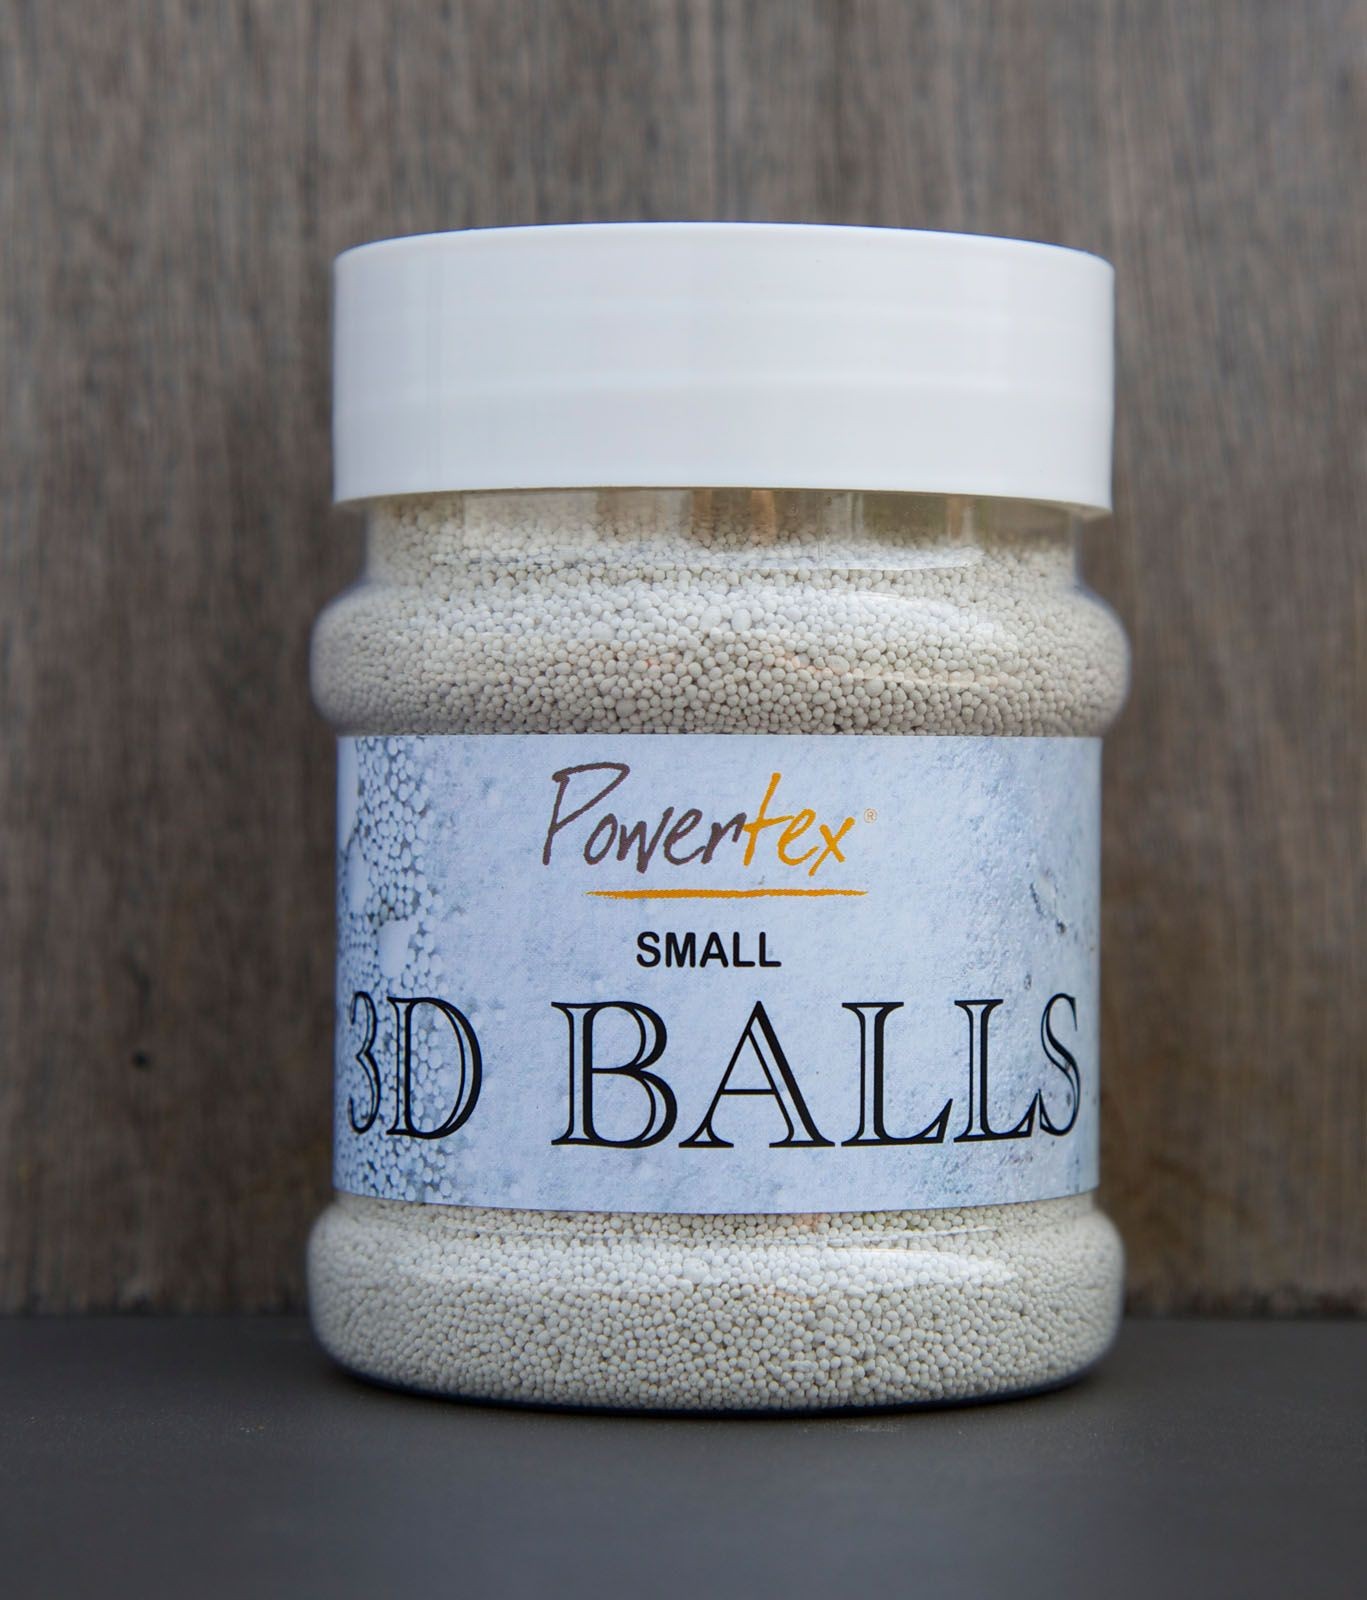 Powertex 3D-Balls small, 230 ml